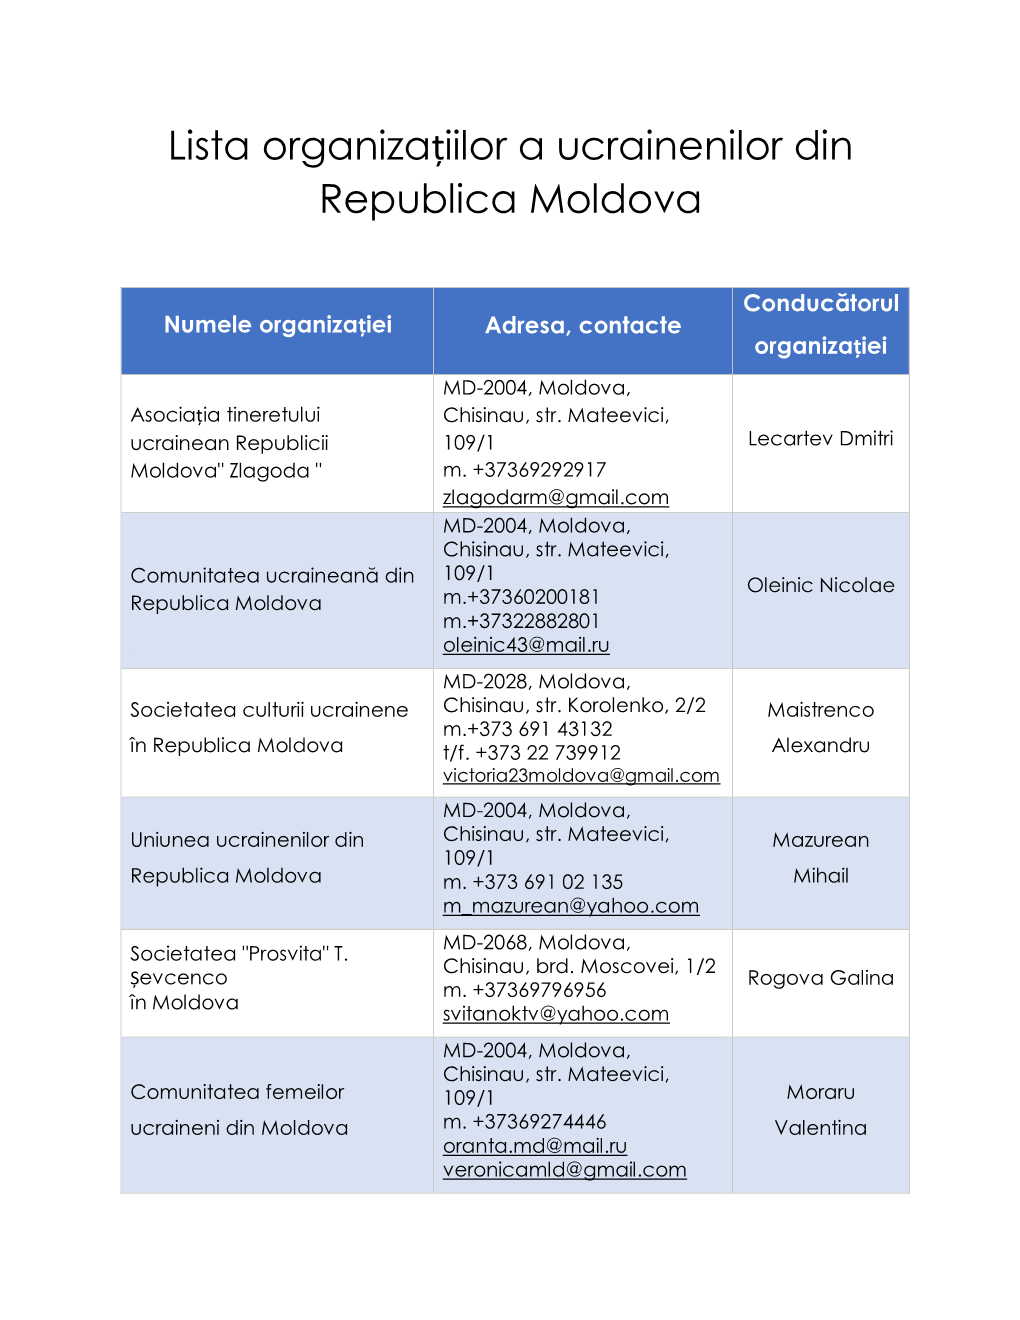 Lista Organizaţiilor a Ucrainenilor Din Republica Moldova